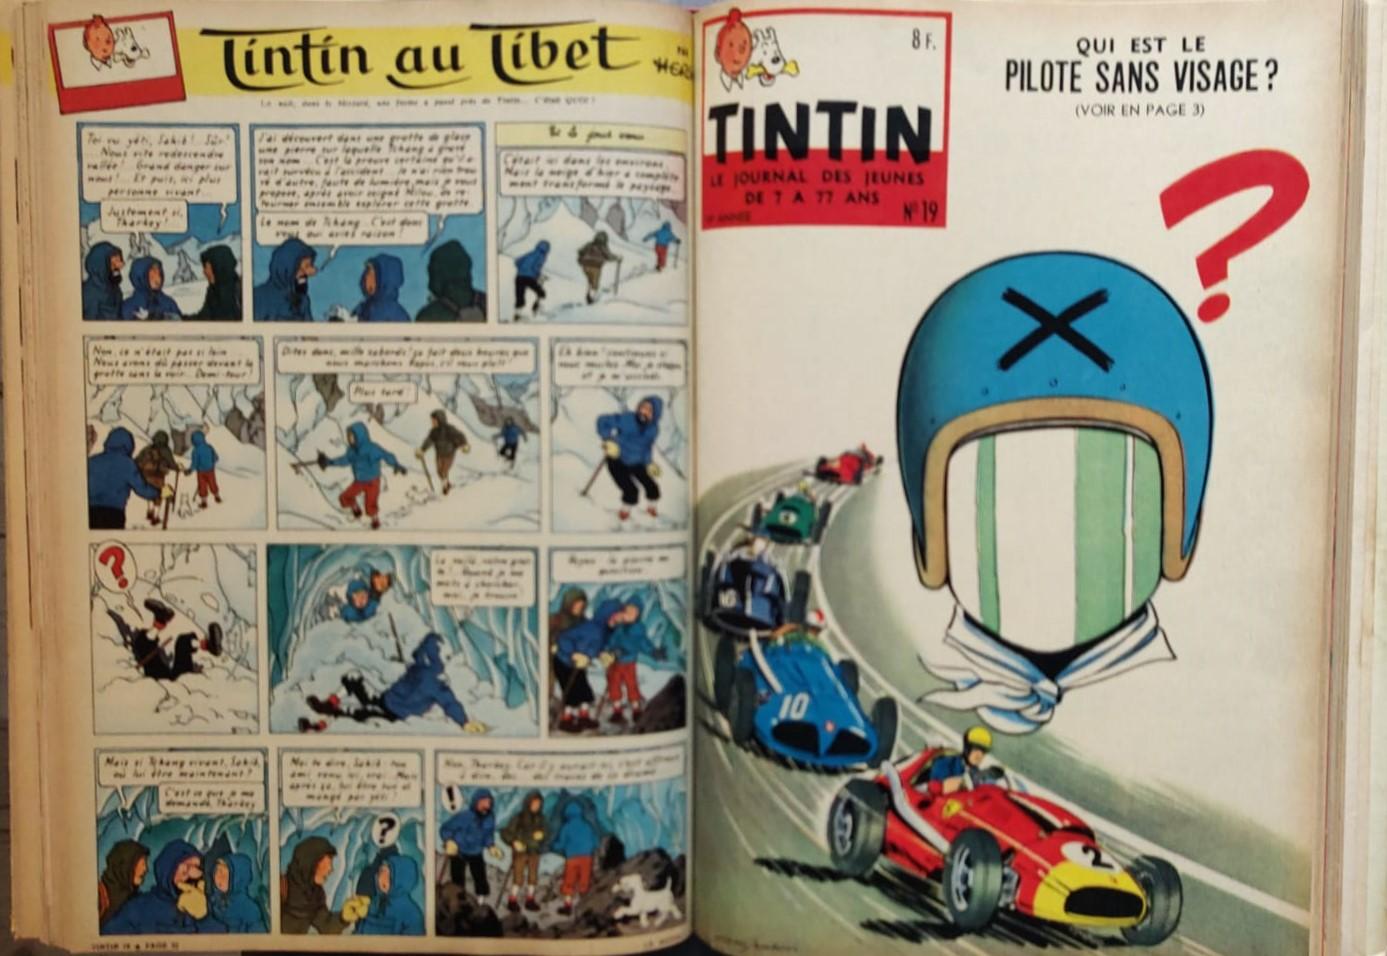 Div. - Tintin Le journal des jeunes de 7 ä 77 ans. Tome 43